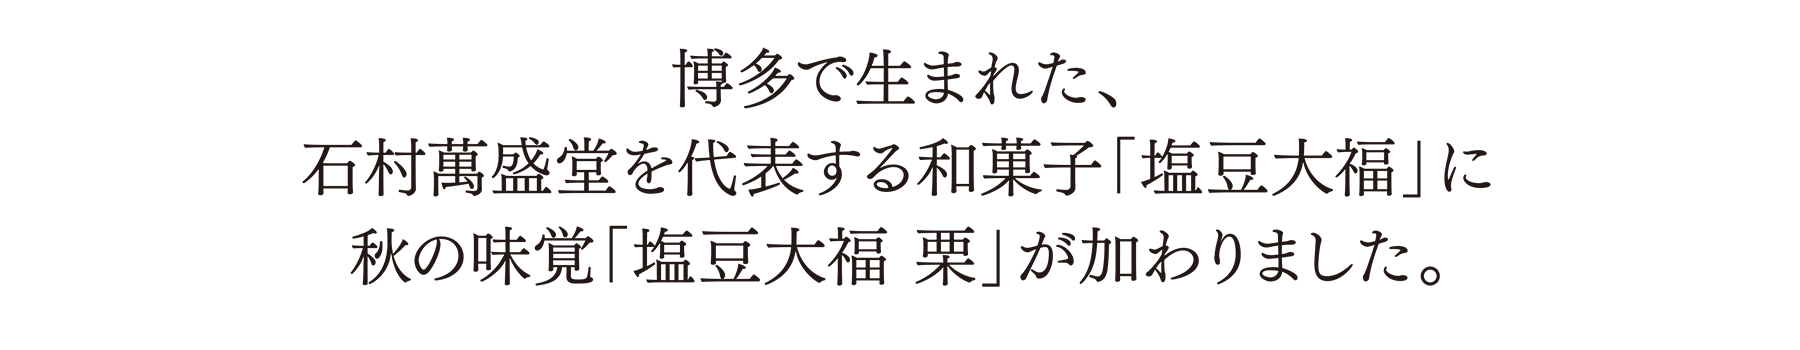 博多で生まれた、石村萬盛堂を代表する和菓子「塩豆大福」に秋の味覚「塩豆大福 栗」が加わりました。